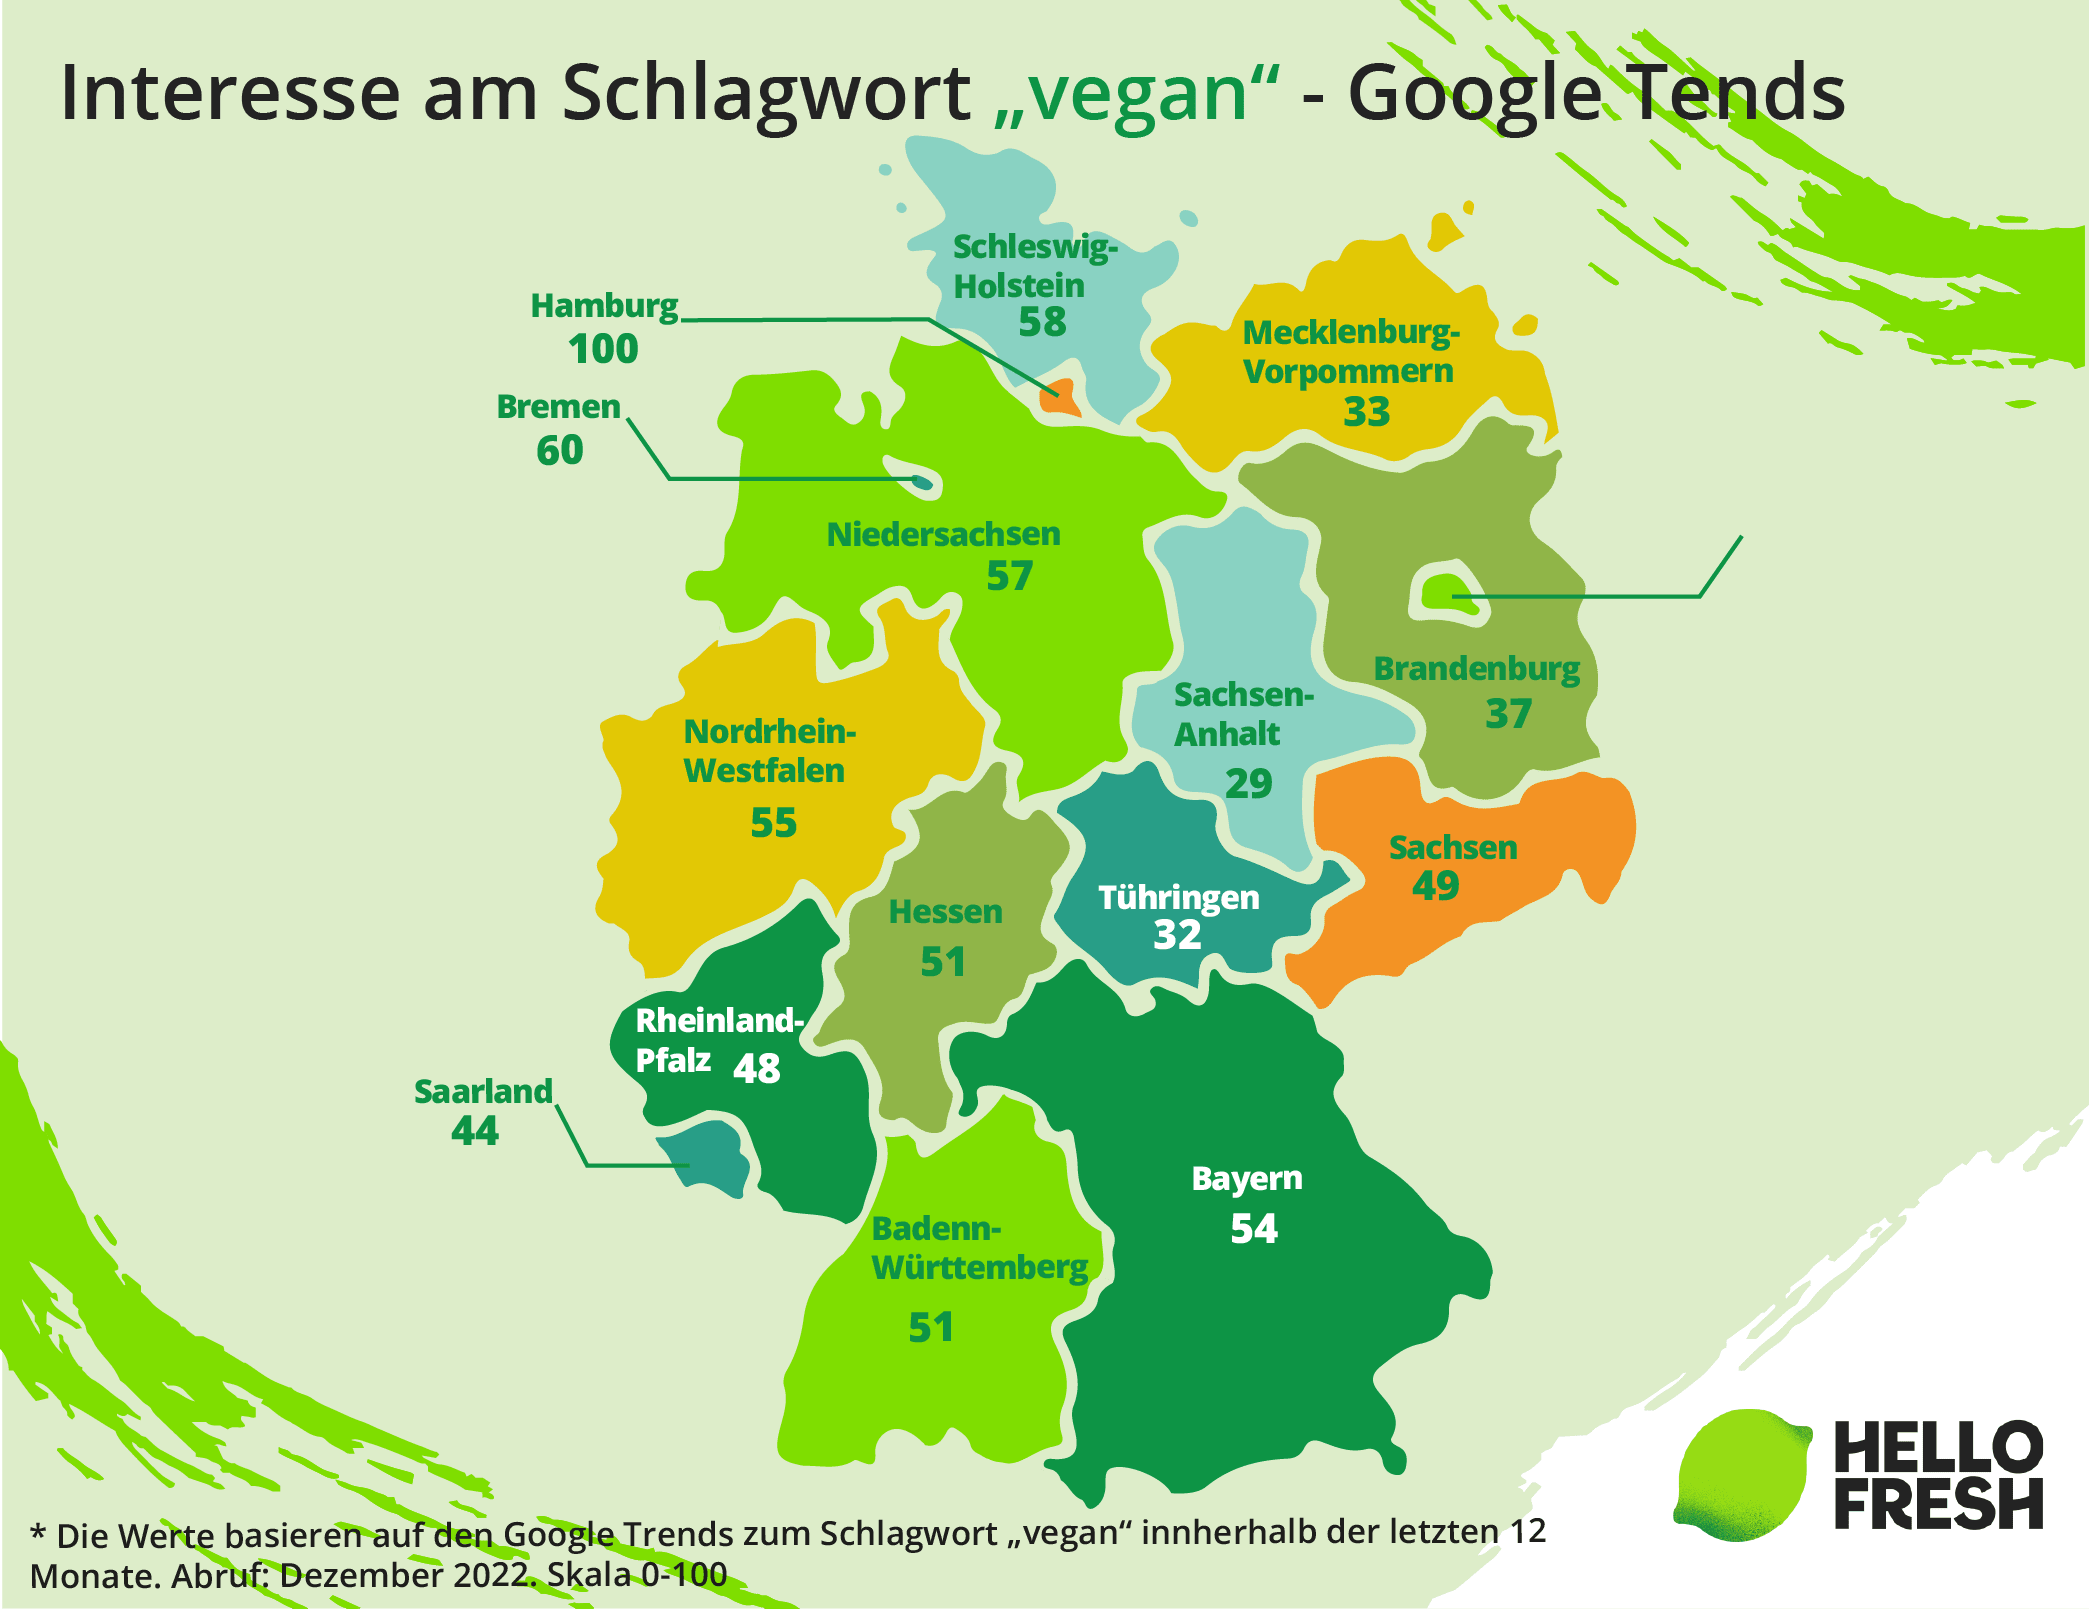 <h2>In Hamburg herrscht das größte vegane Interesse, Sachsen Anhalt Schlusslicht </h2>